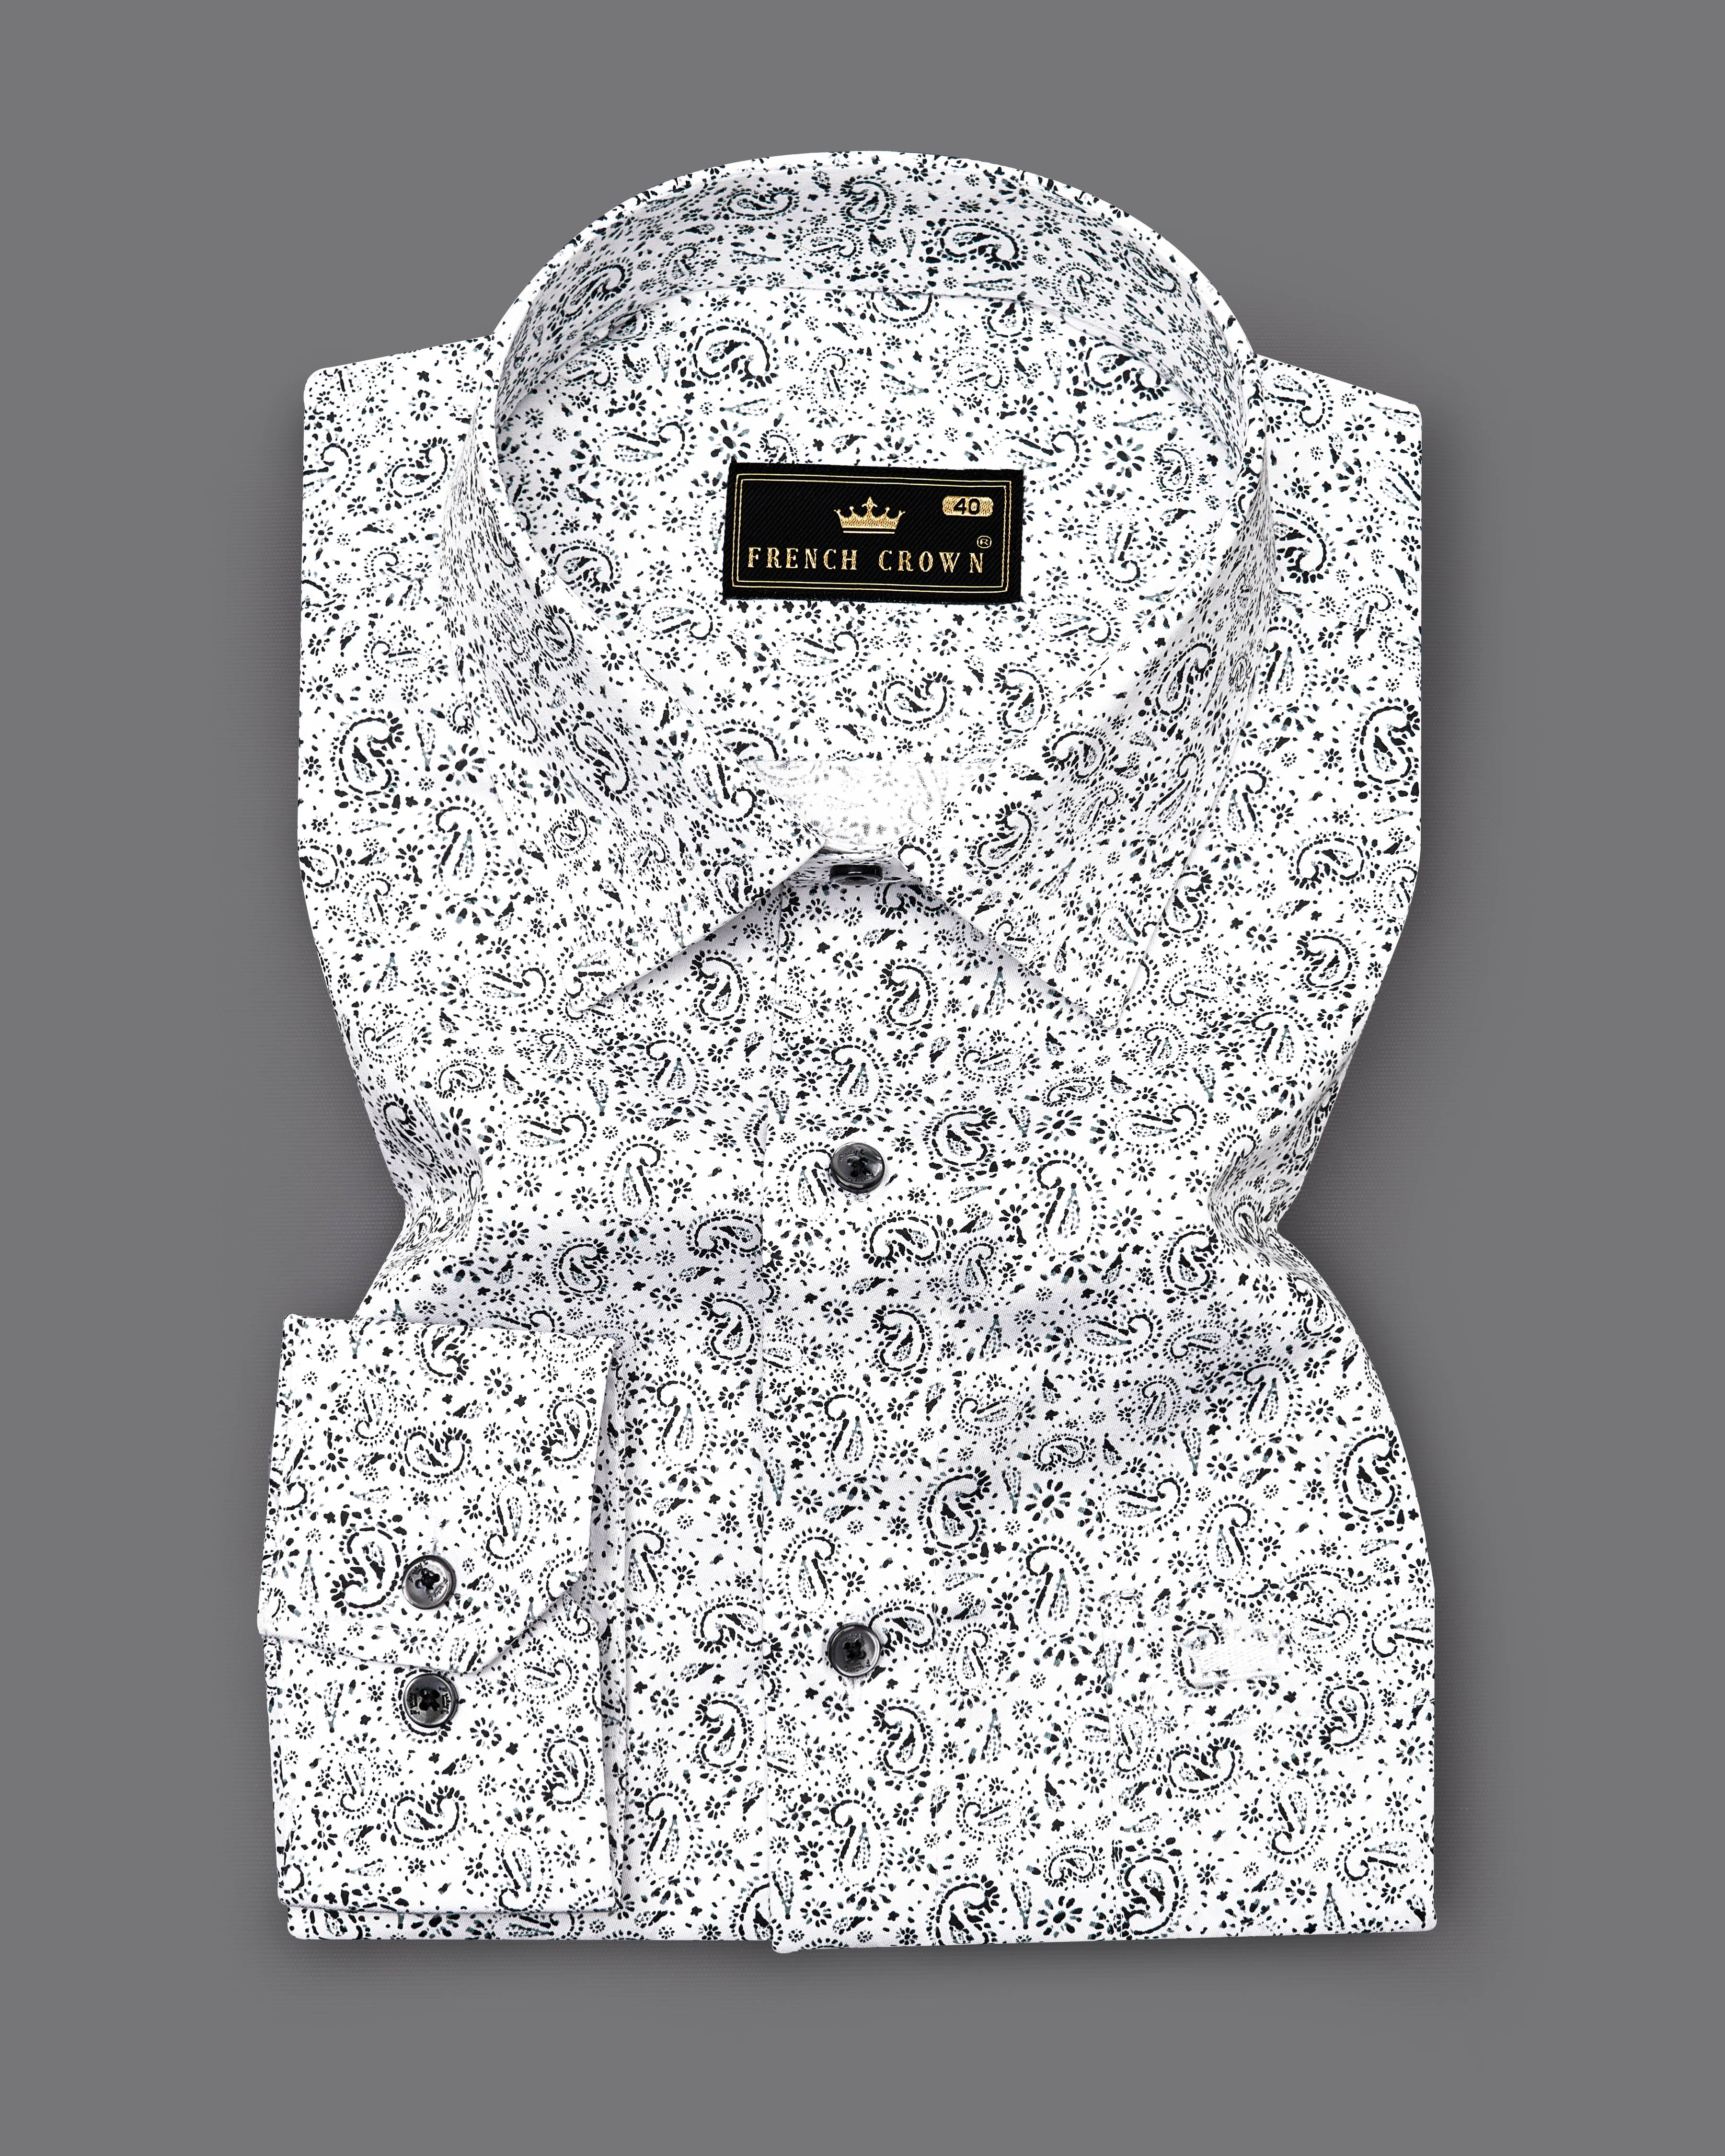 Bright White with Black Paisley Printed Super Soft Premium Cotton Shirt 9182-BLK-38,9182-BLK-H-38,9182-BLK-39,9182-BLK-H-39,9182-BLK-40,9182-BLK-H-40,9182-BLK-42,9182-BLK-H-42,9182-BLK-44,9182-BLK-H-44,9182-BLK-46,9182-BLK-H-46,9182-BLK-48,9182-BLK-H-48,9182-BLK-50,9182-BLK-H-50,9182-BLK-52,9182-BLK-H-52